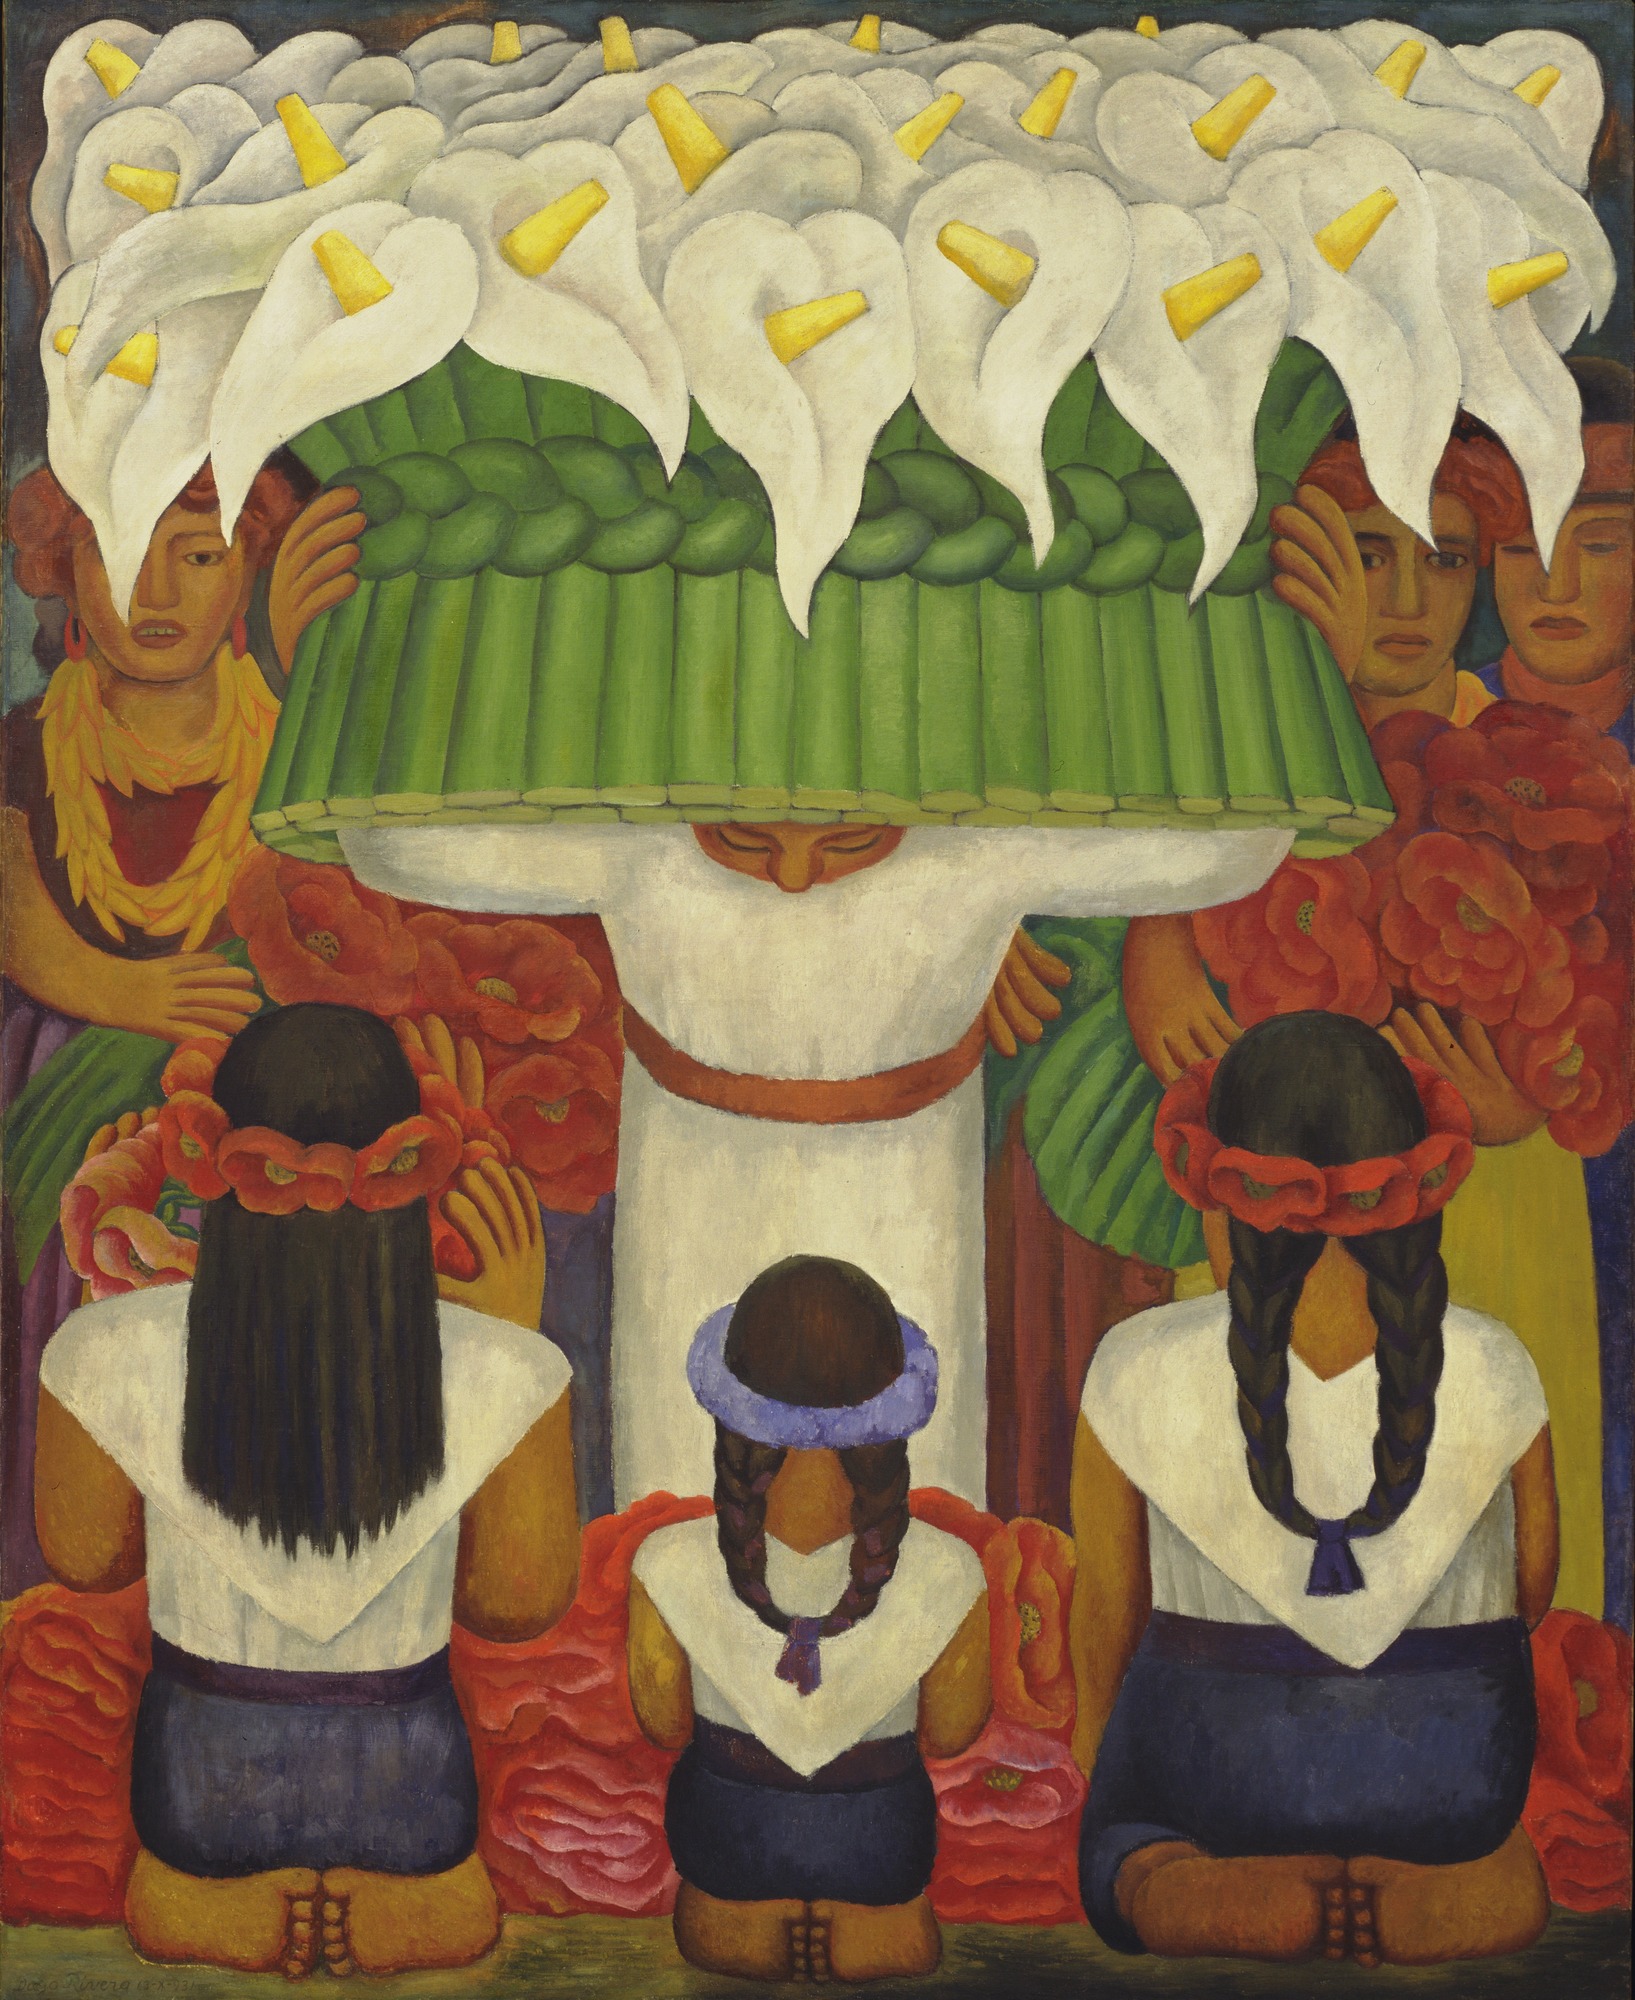 聖安妮塔的花季饗宴 by Diego Rivera - 西元1931 - 199.3 x 162.5 公分 